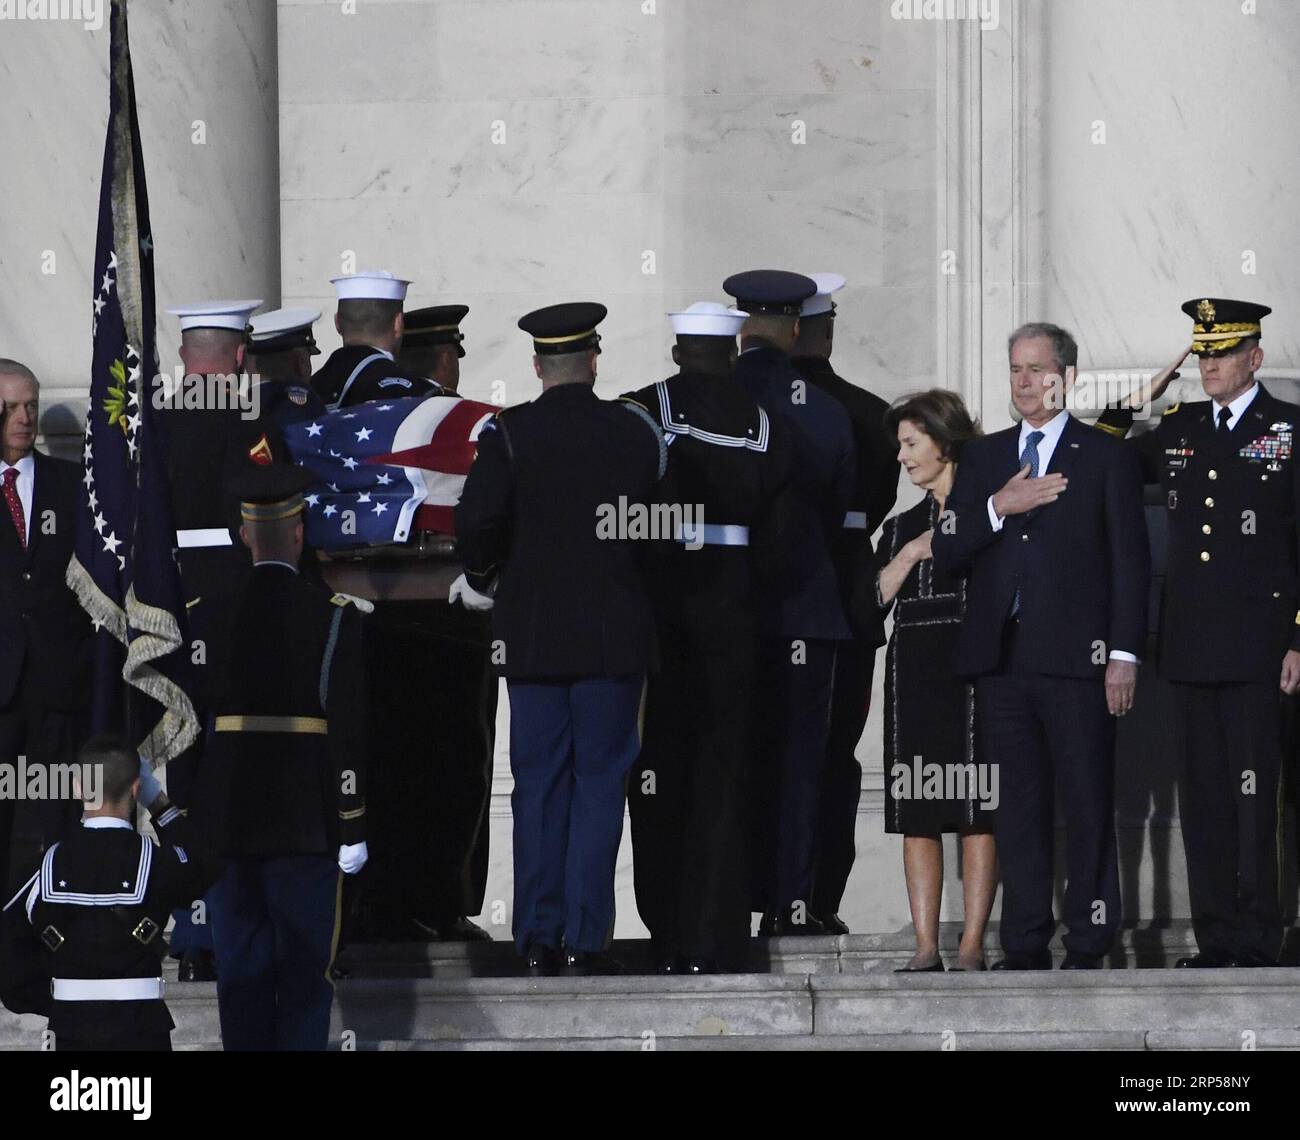 (181203) -- WASHINGTON, 3. Dezember 2018 -- der ehemalige US-Präsident George W. Bush (2. R) und die ehemalige First Lady Laura Bush (3. R) legen ihre Hände über ihr Herz, während der Sarg des früheren US-Präsidenten George H.W. Bush zum Eingang des Kapitols der Vereinigten Staaten getragen wird. dort, wo es am 3. Dezember 2018 in Washington D.C. in den Vereinigten Staaten liegen wird. George H.W. Bush, der 41. Präsident der Vereinigten Staaten, starb am 30. November im Alter von 94 Jahren. U.S.-WASHINGTON D.C.-GEORGE H.W. BUSH-LIEGT IM STAAT LIUXJIE PUBLICATIONXNOTXINXCHN Stockfoto